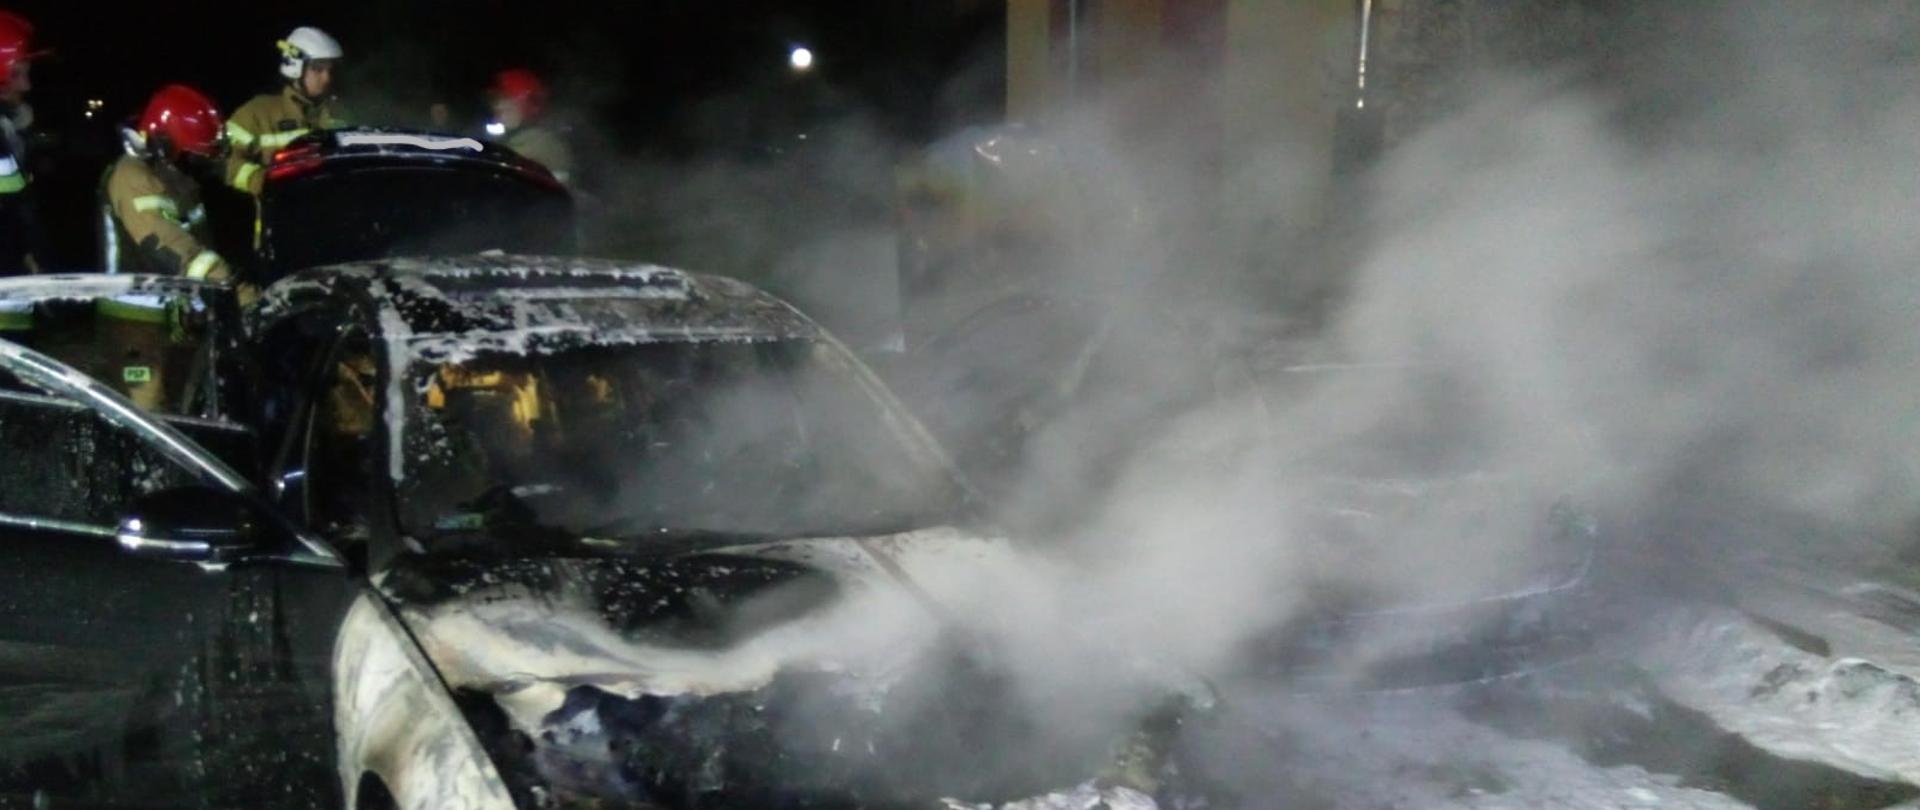 Zdjęcie przedstawia zniszczony w wyniku pożaru samochód z resztkami piany gaśniczej. Za autem pracuje grupa strażaków.